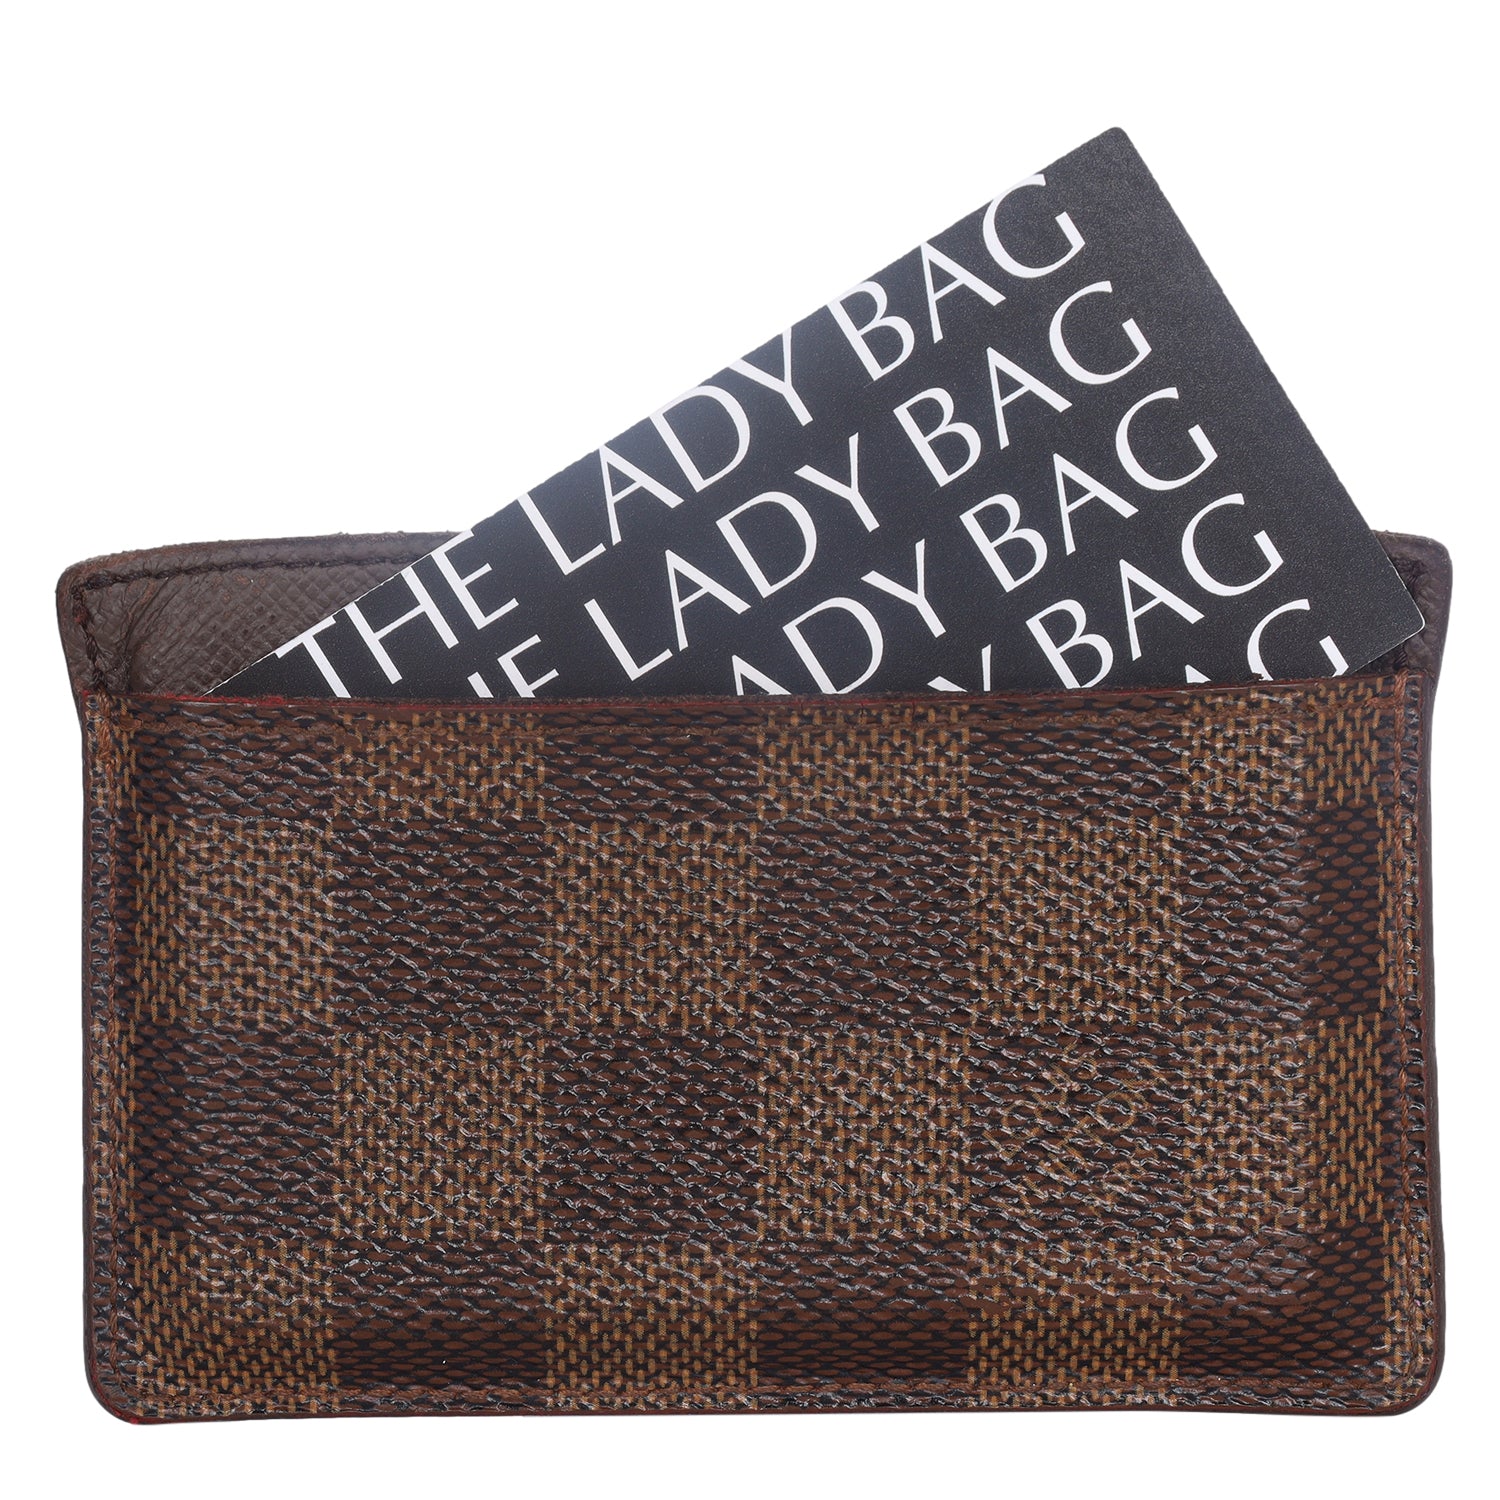 Does Louis Vuitton Bag Have Authenticity Card